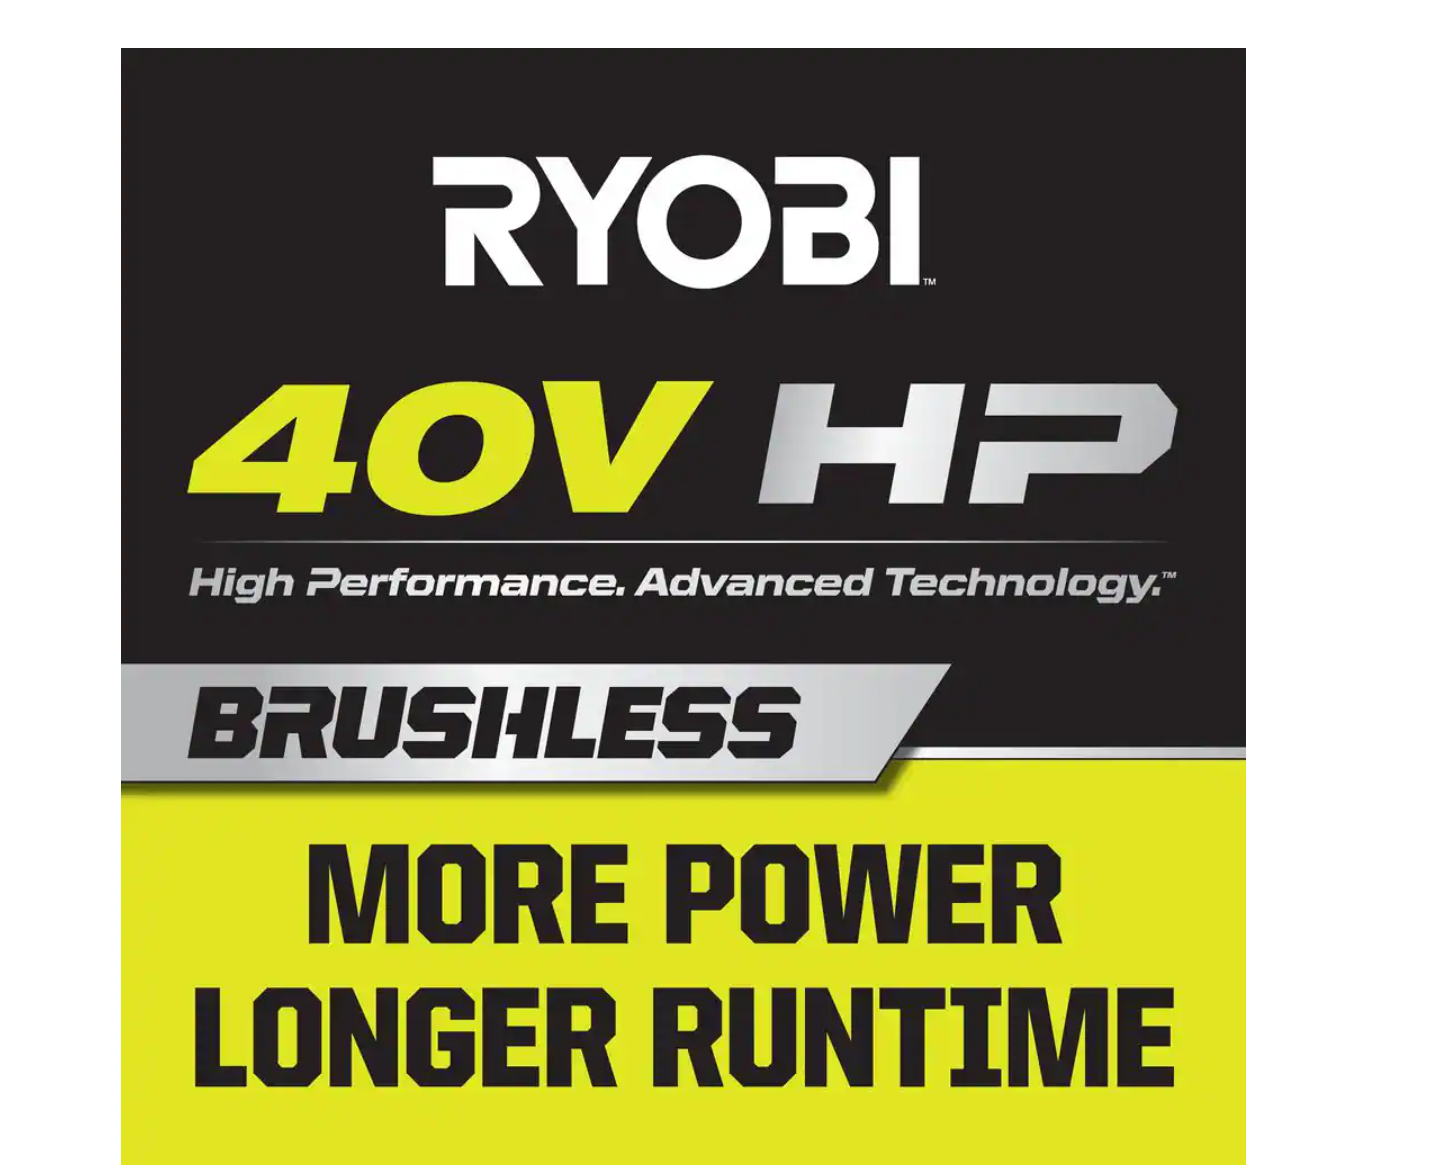 40V HP BRUSHLESS 650 CFM WHISPER SERIES BLOWER - RYOBI Tools